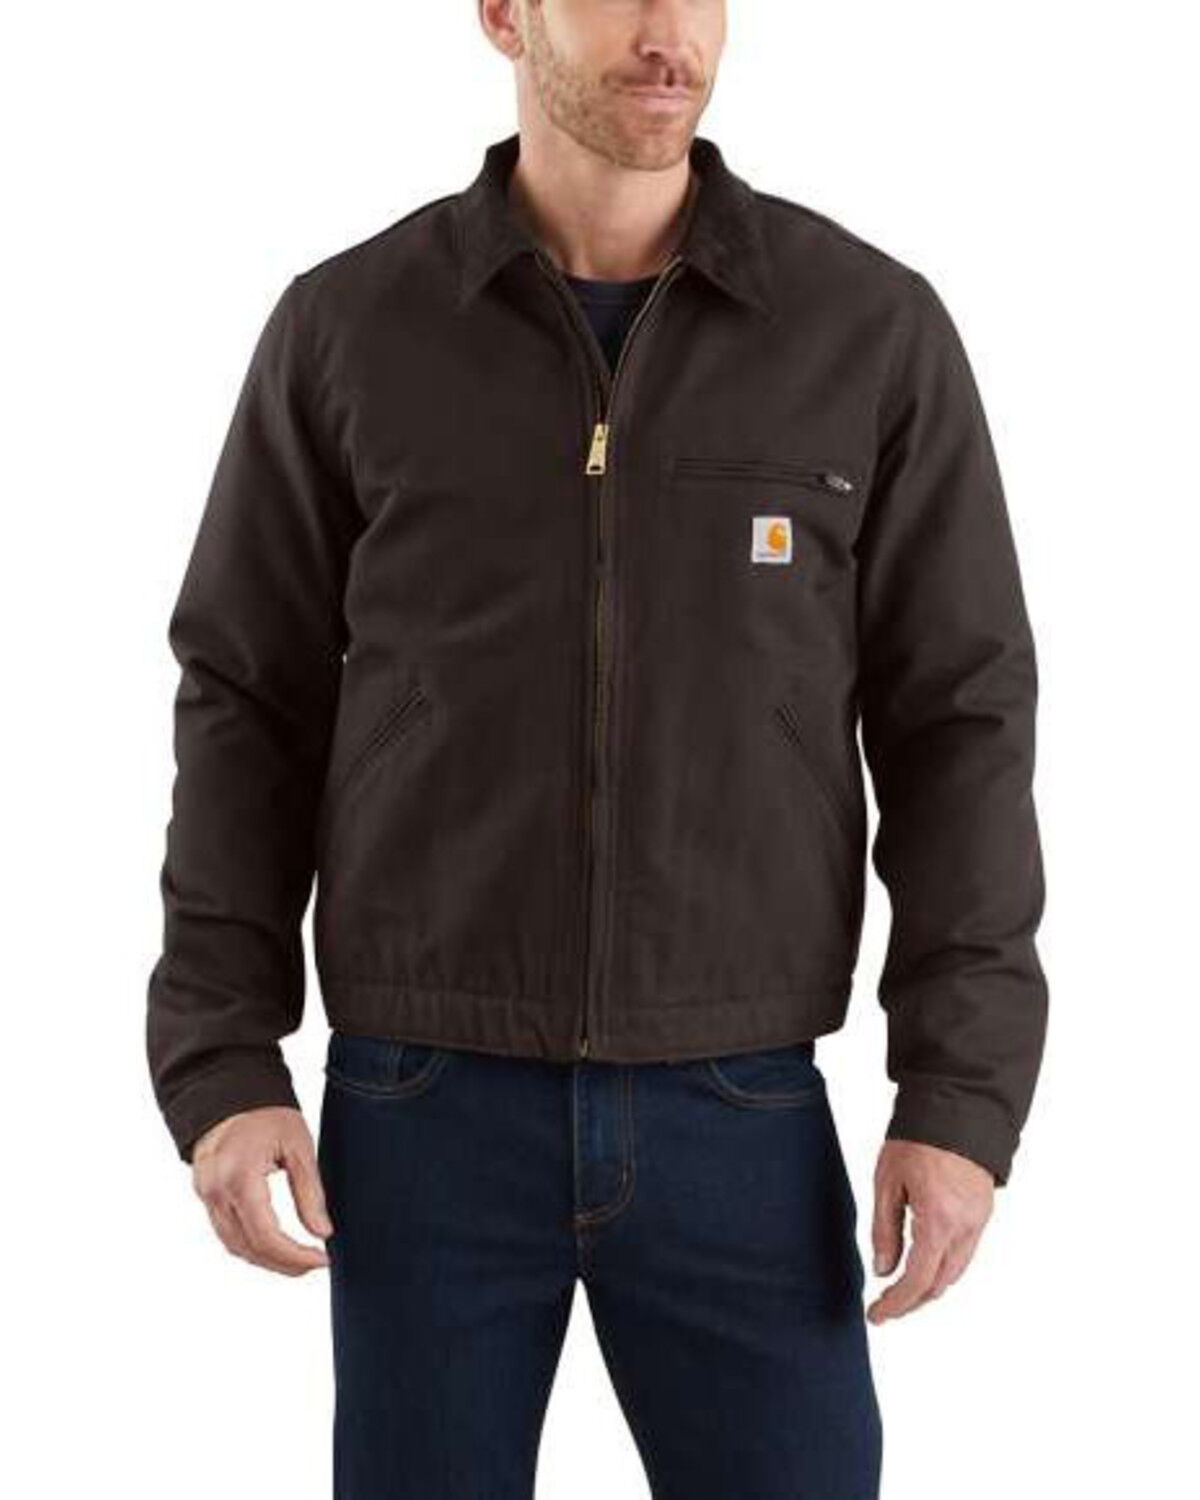 Männer S M L XL XXL workwear jacket Carhartt Jacke Sandstone Berwick